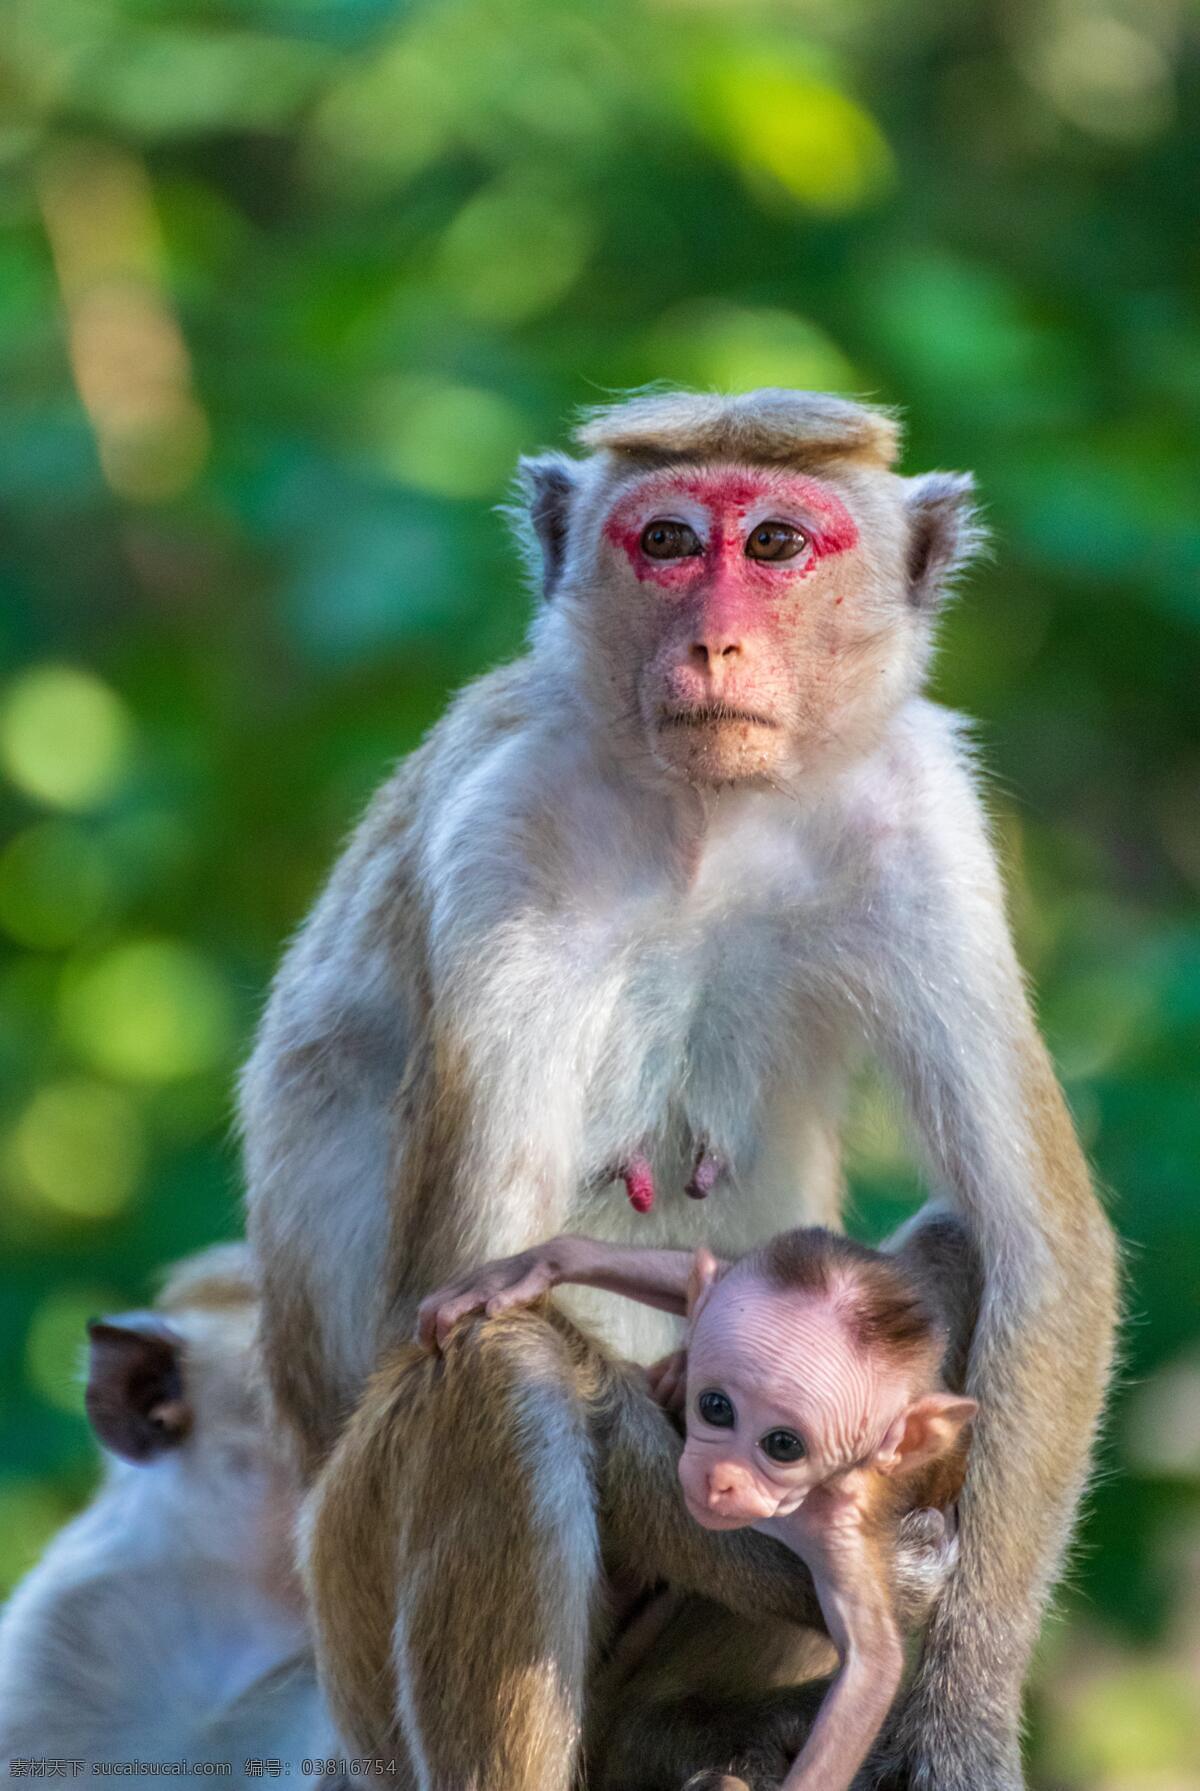 猴子可爱 猴子 猴 动物 野生 生物 小猴子 害怕 拥抱 保护动物 背景 公园 可爱猴子 猴子妈妈 猴妈妈 动物昆虫 生物世界 野生动物